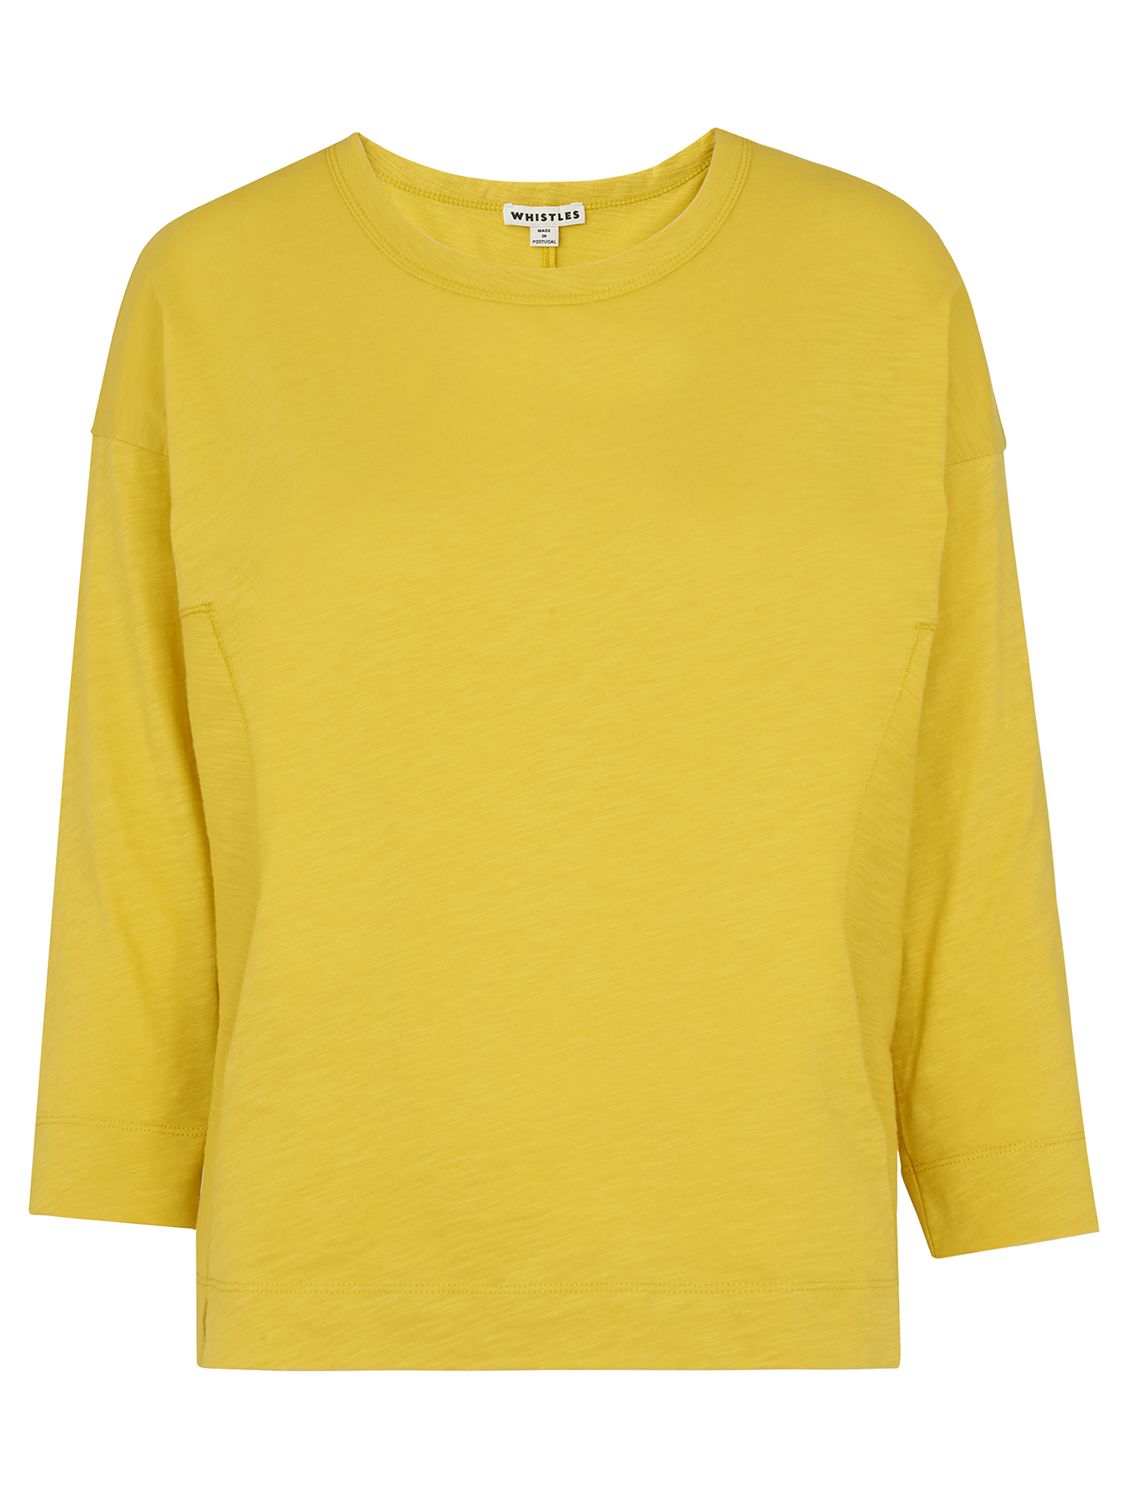 whistles yellow sweatshirt